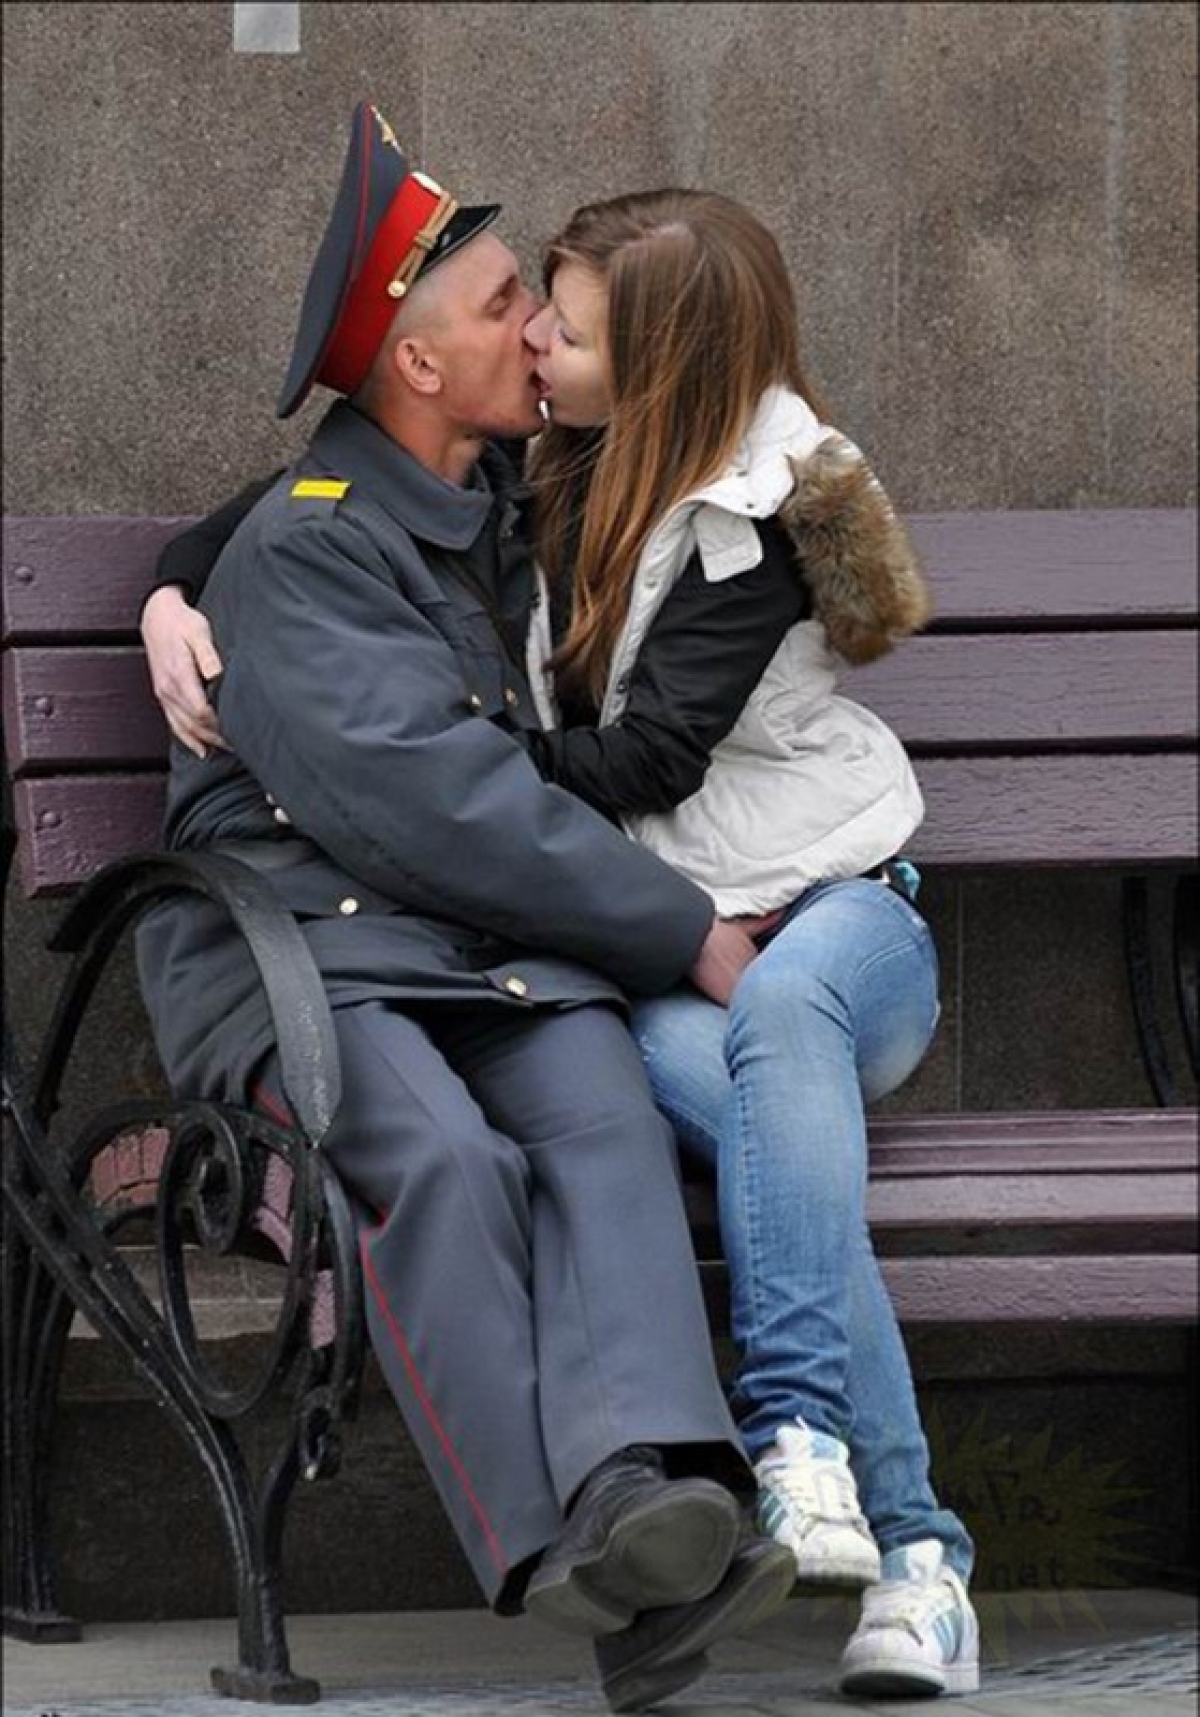 Лапают девчонок. Целующийся милиоцеонеры. Целующиеся милиционеры. Девушка с полицейским парнем. Поцелуй с полицейским.